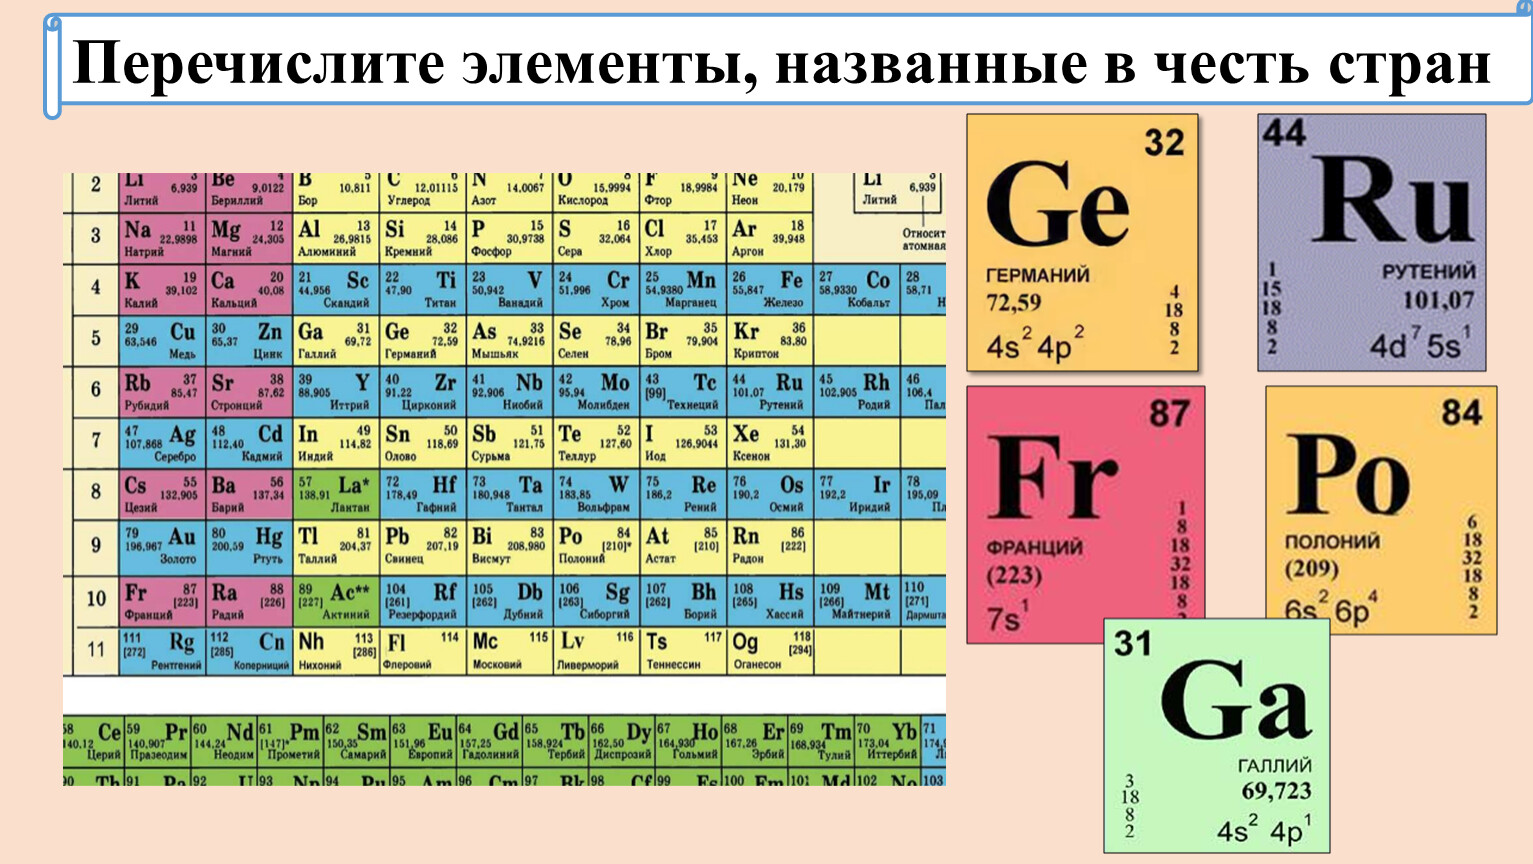 Элемента принято называть элементами. Таблица химических элементов Менделеева. 213 Элемент таблицы Менделеева. Элементы таблицы Менделеева названные в честь стран. V химический элемент.